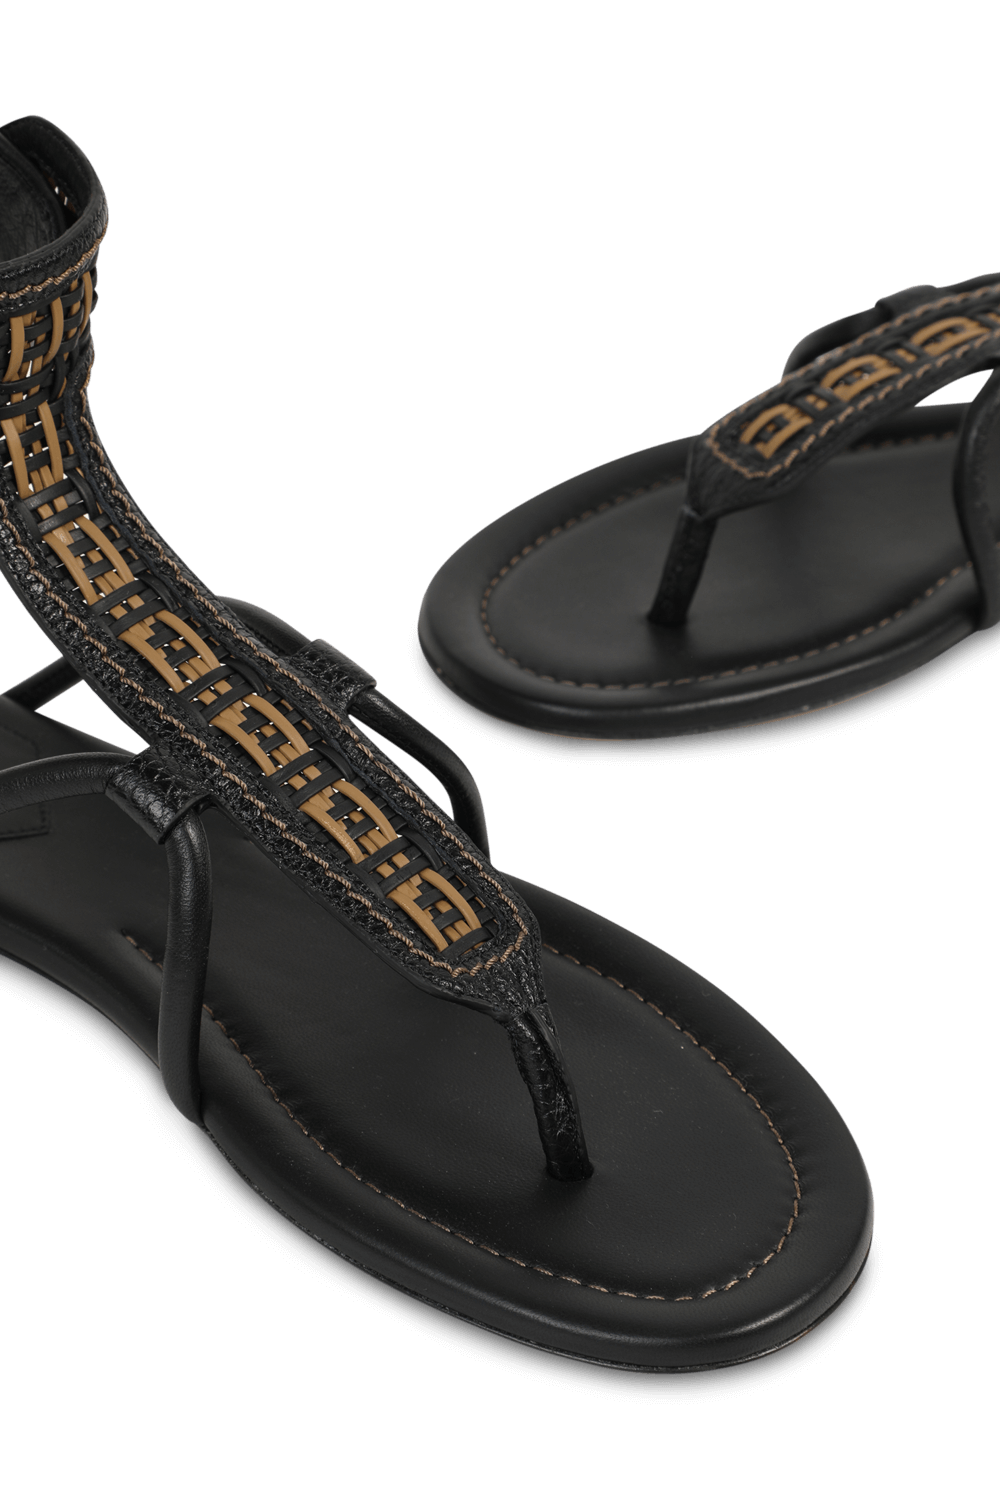 FF Woven Strap Sandals in Black FENDI